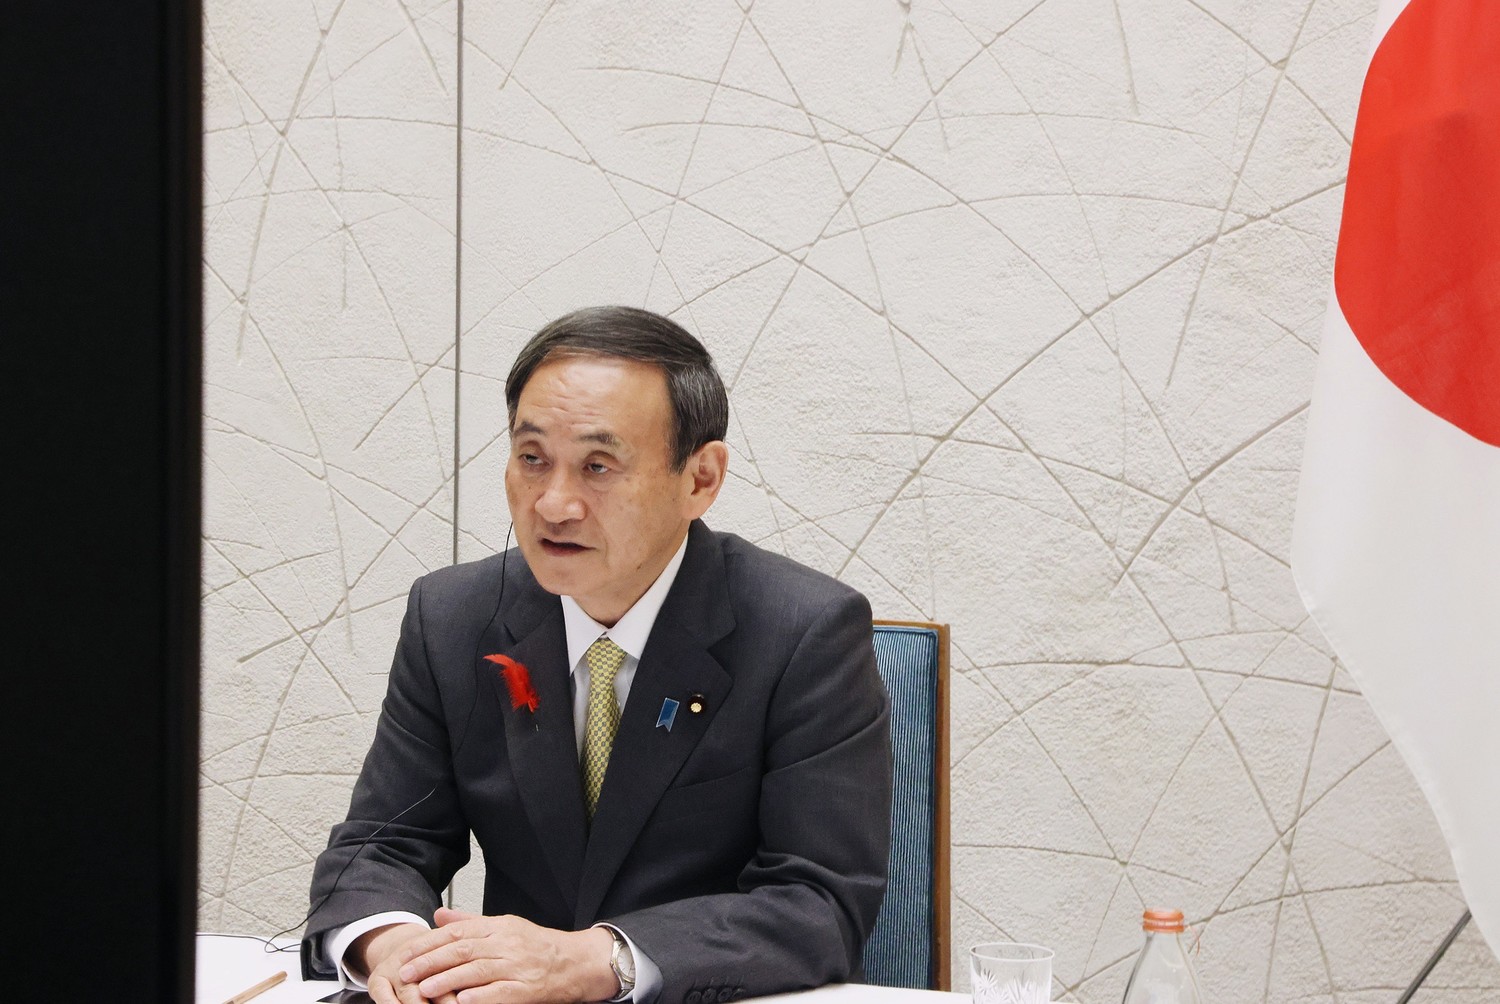 日本新任首相菅義偉首次國外訪問 將與越南、印尼討論南海議題